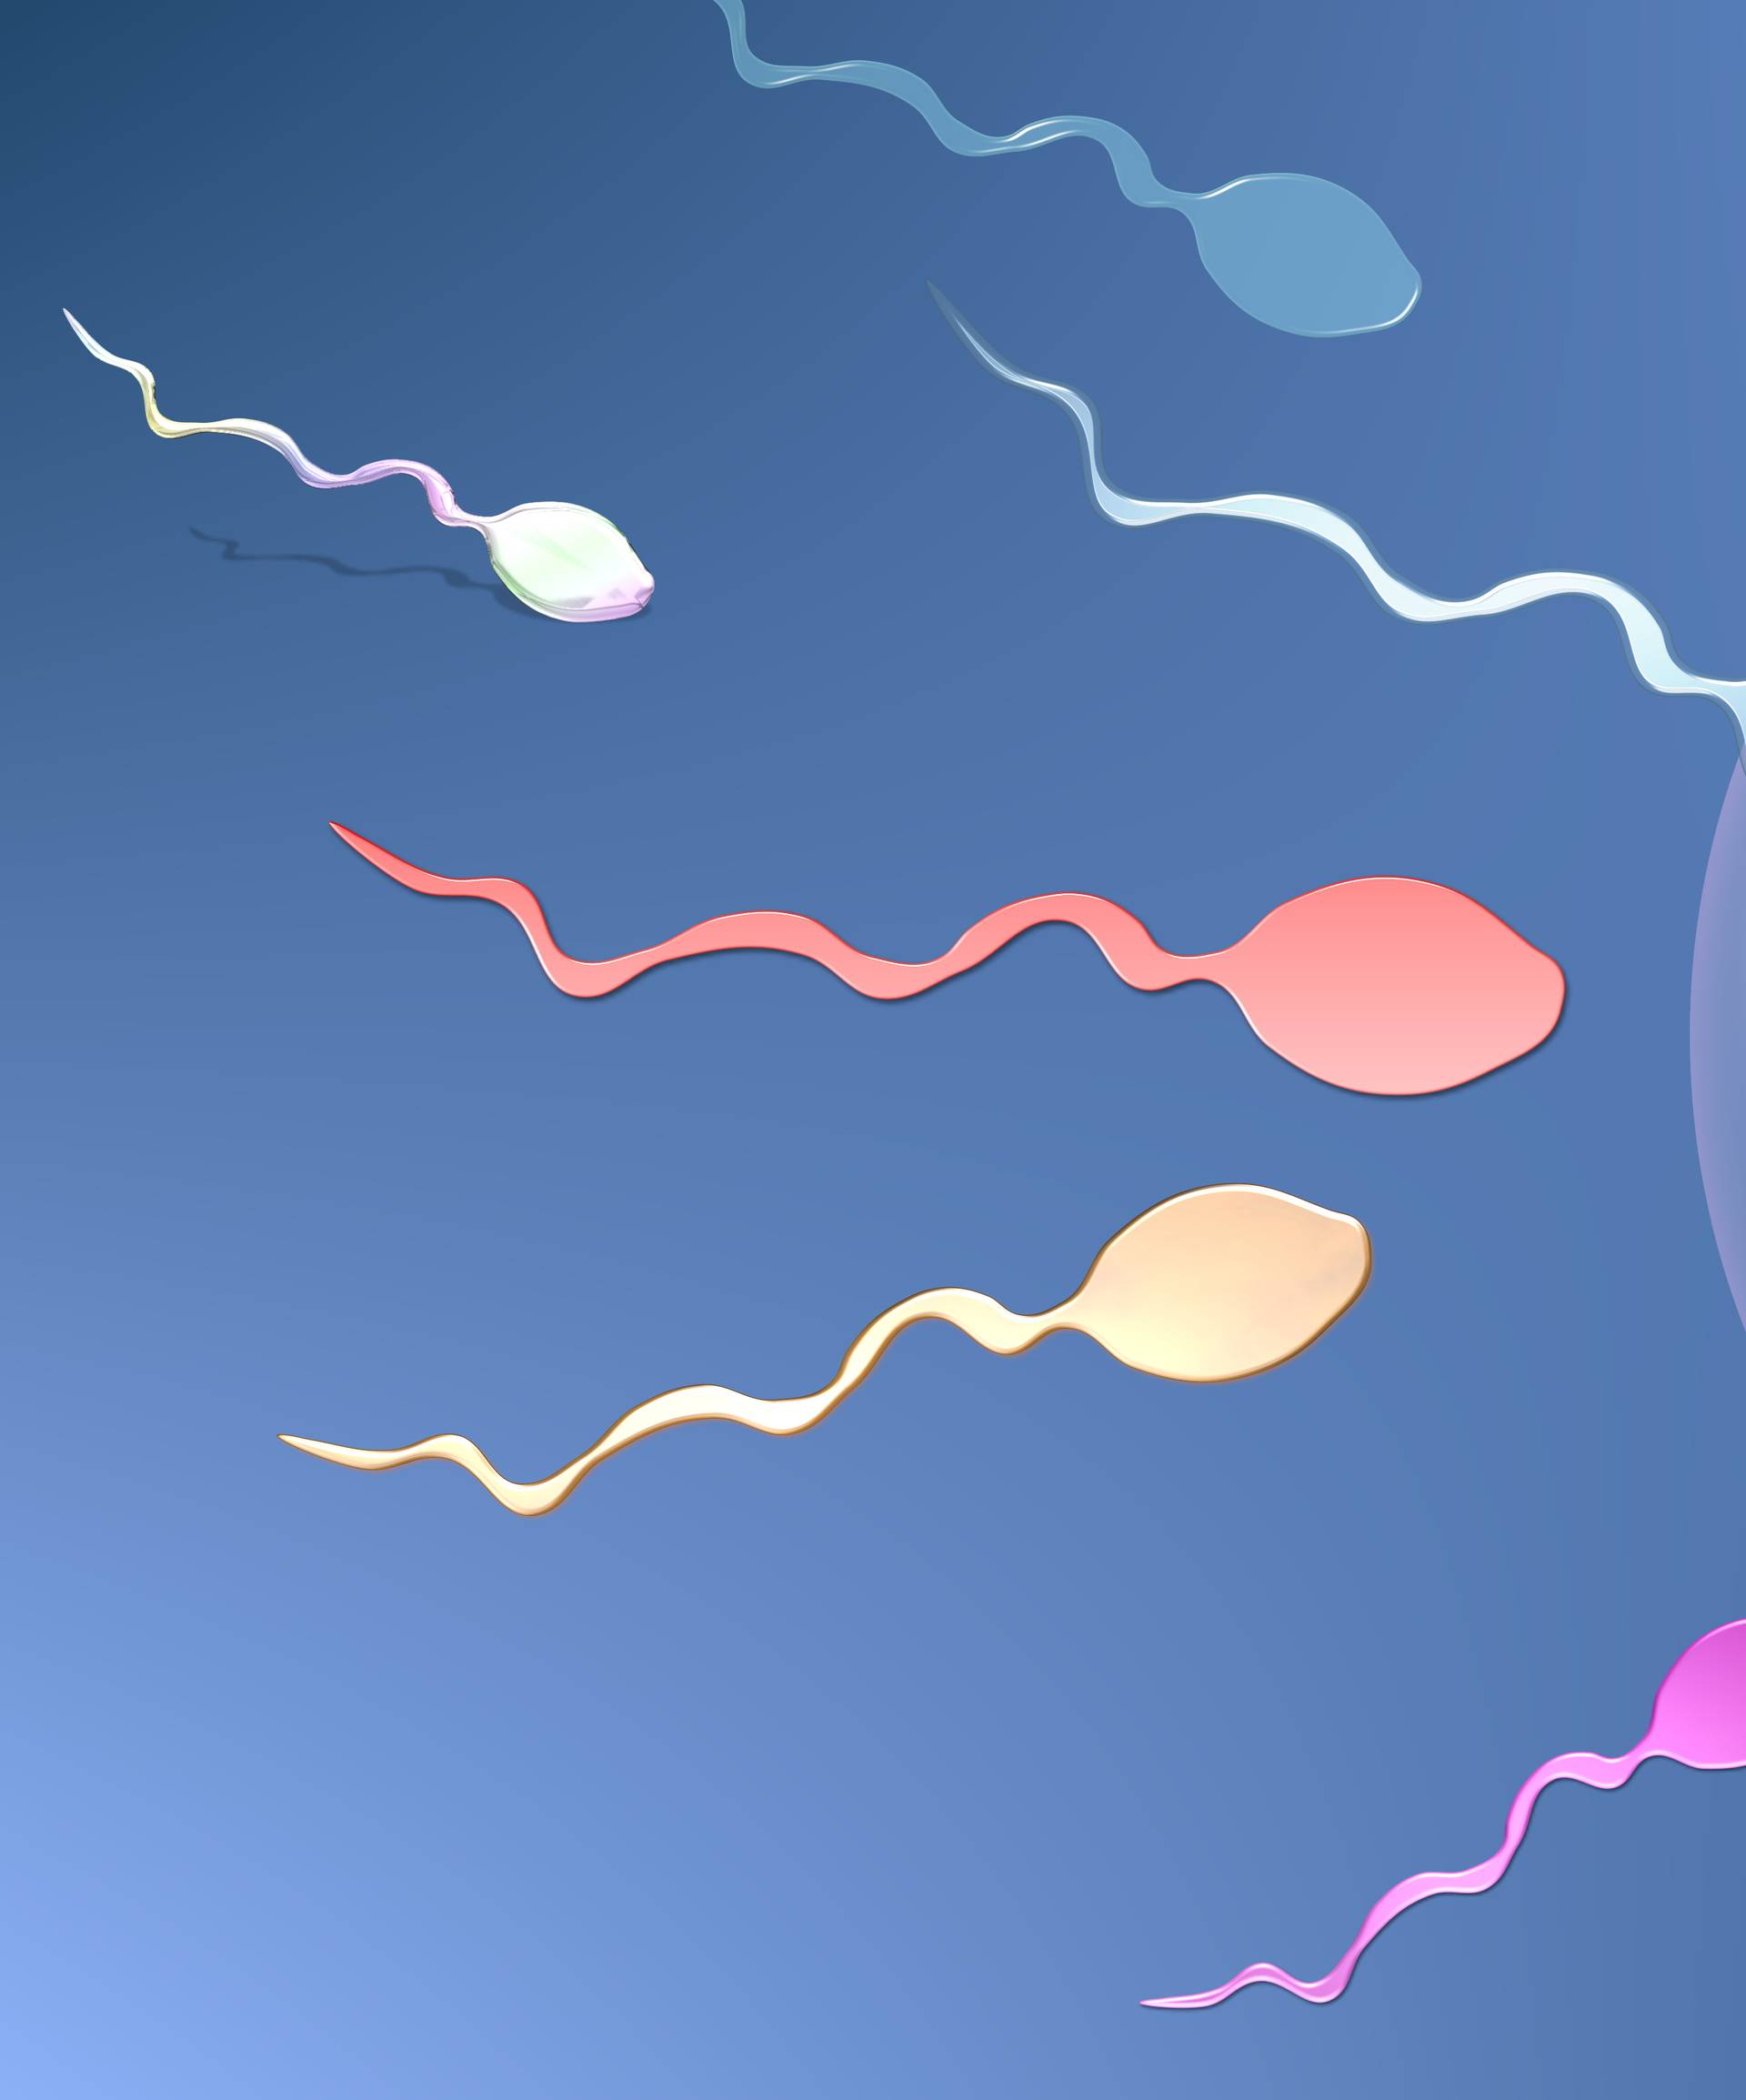 Broj spermija kod muškaraca pada, još nitko ne zna zašto